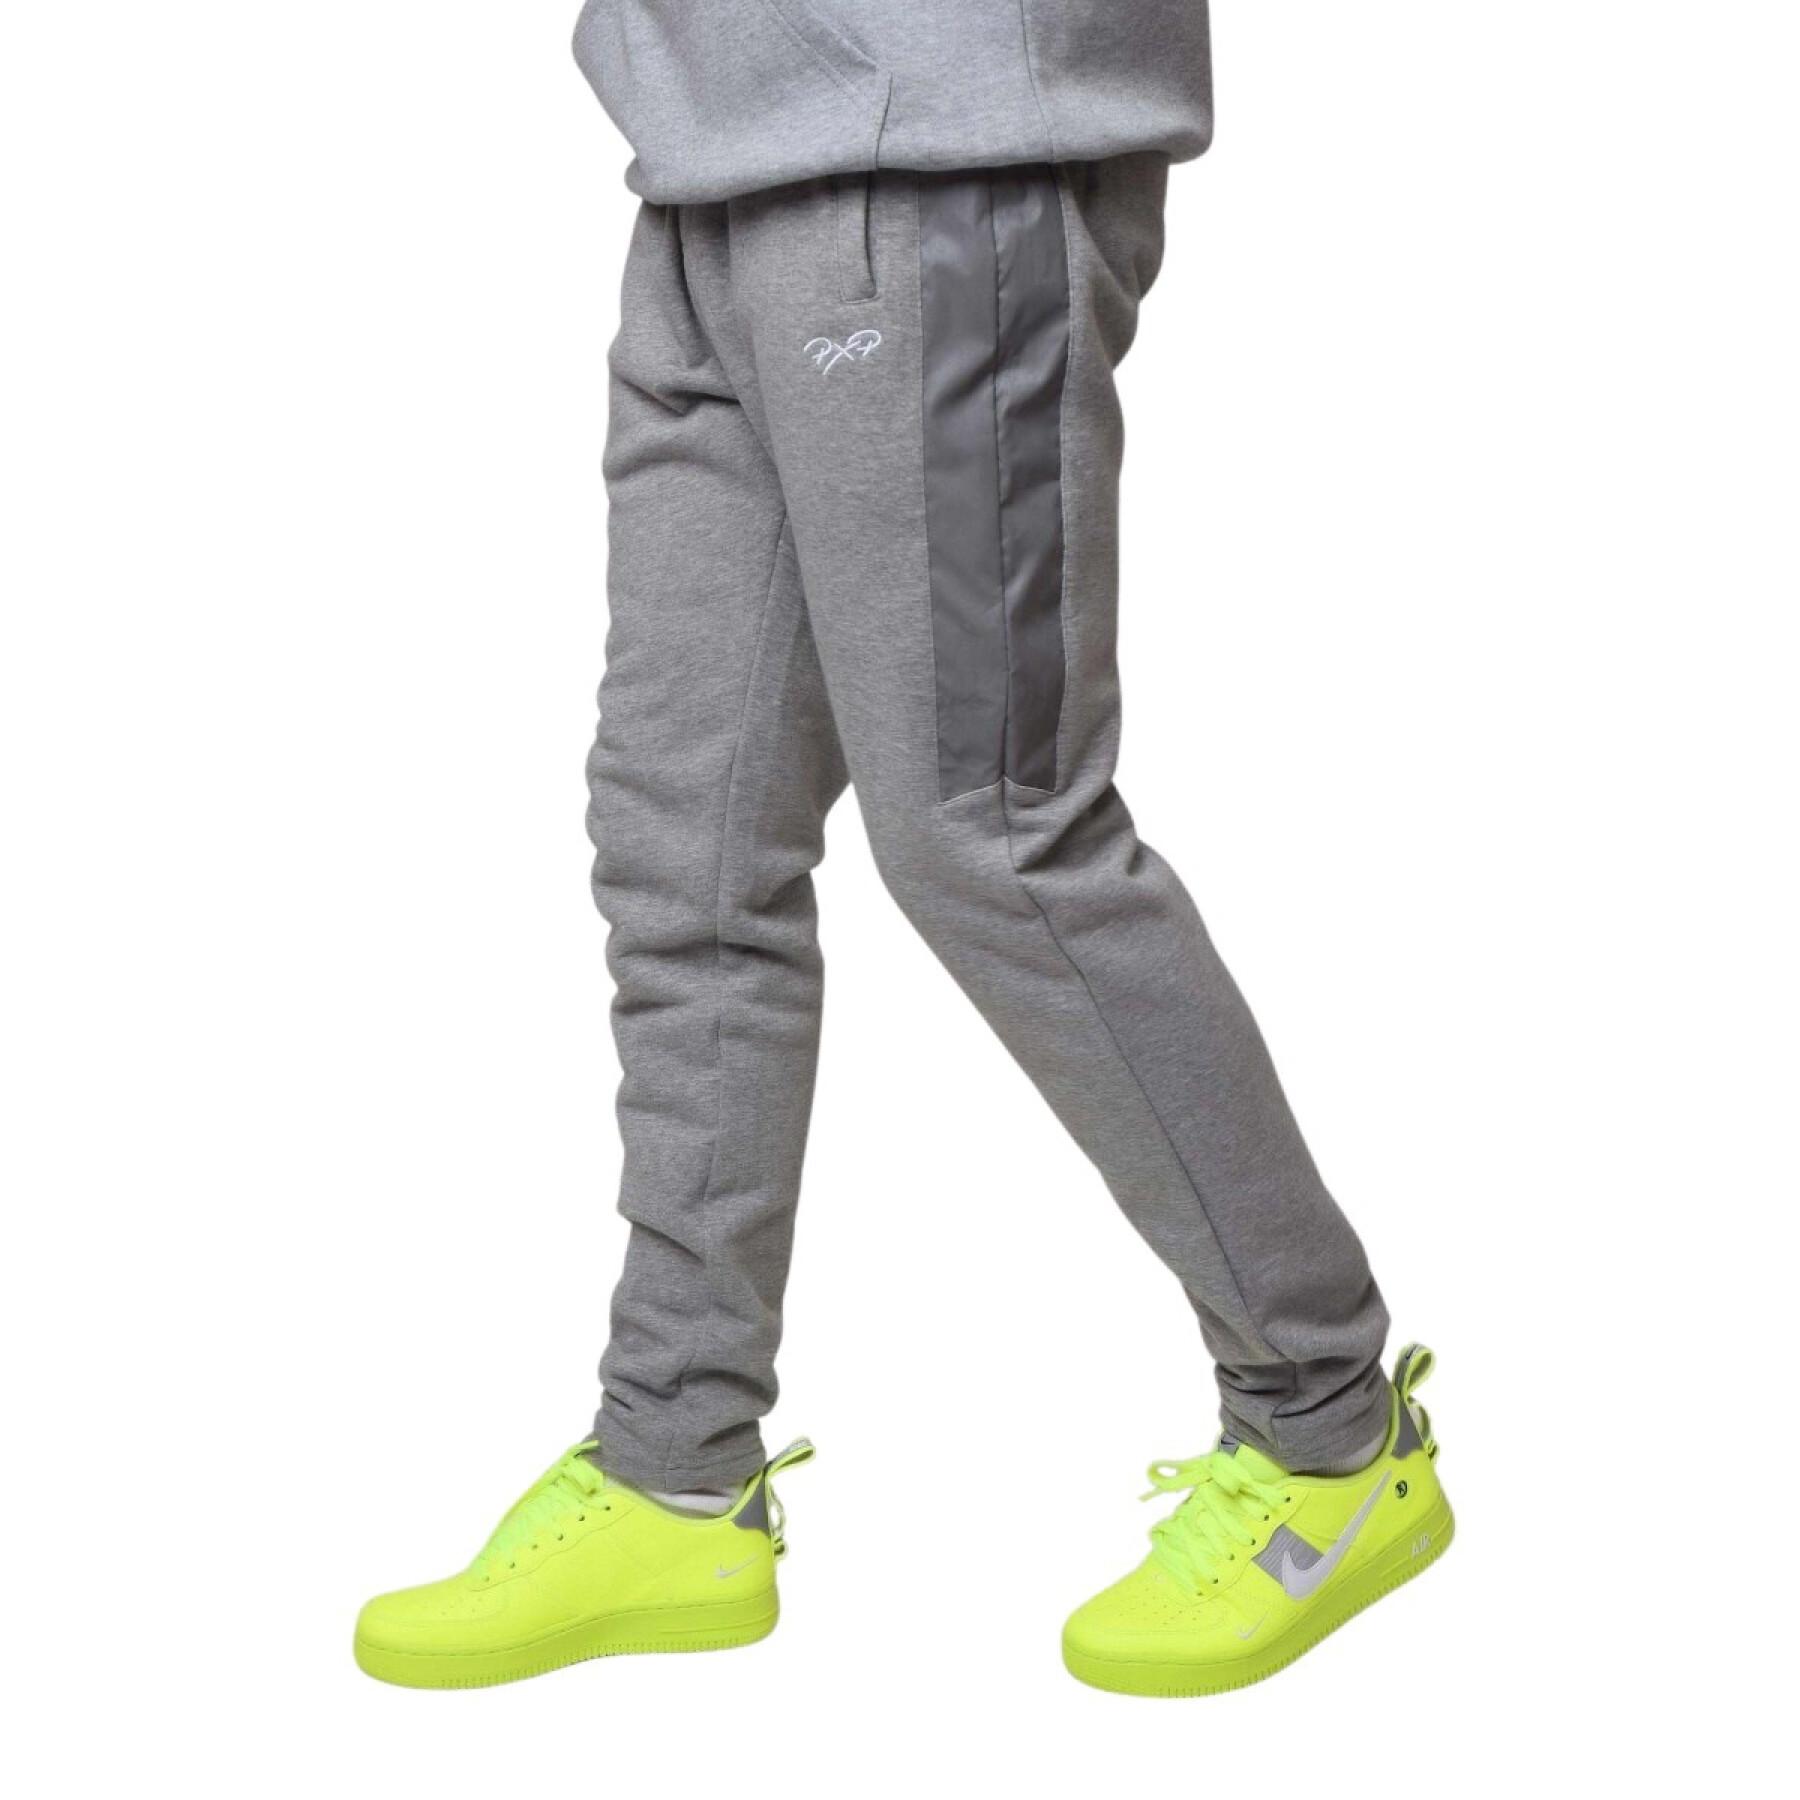 Bi-material jogging suit Project X Paris